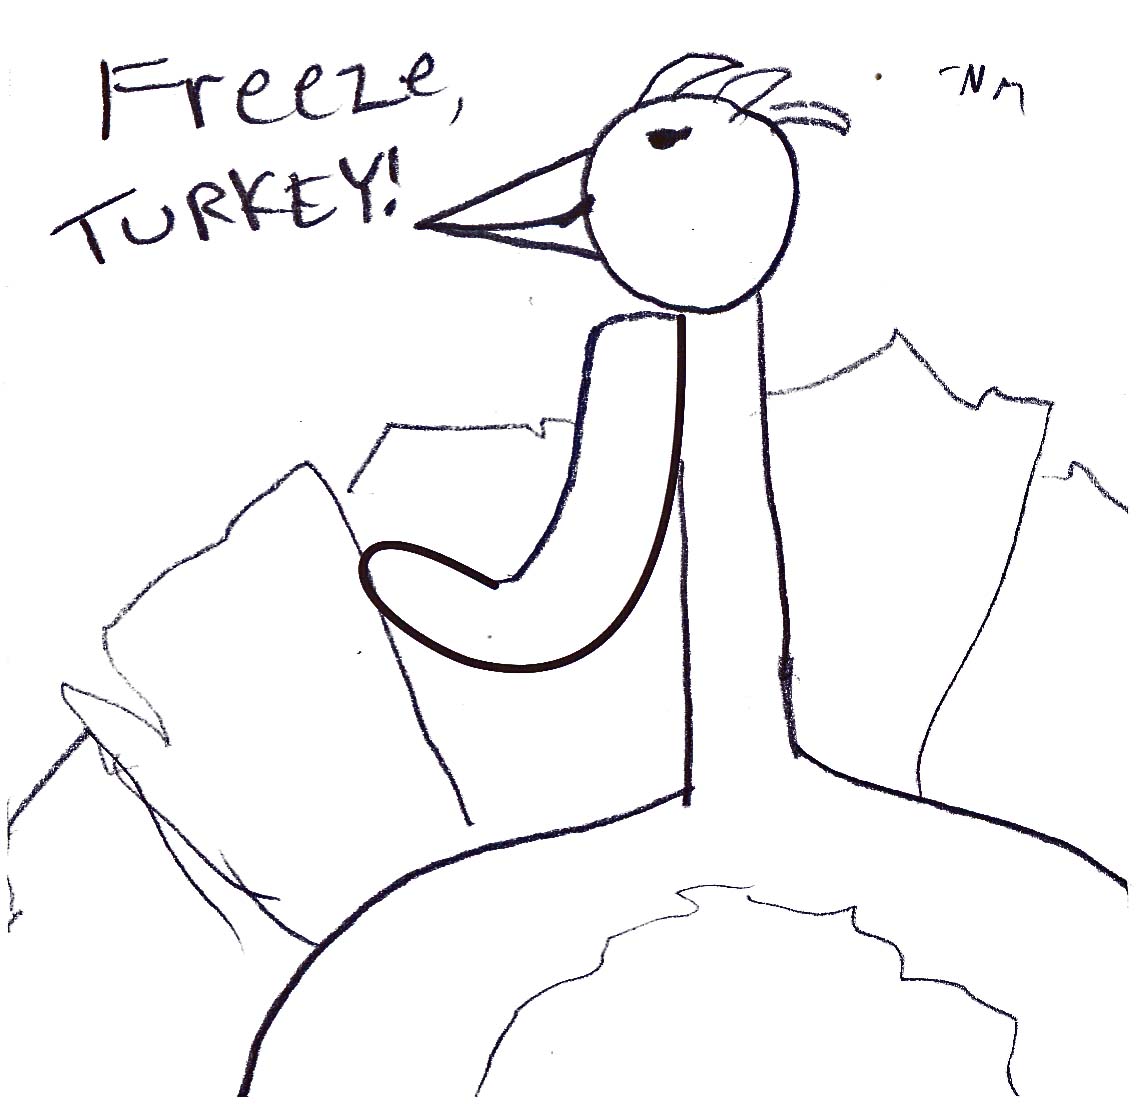 freeze turkey